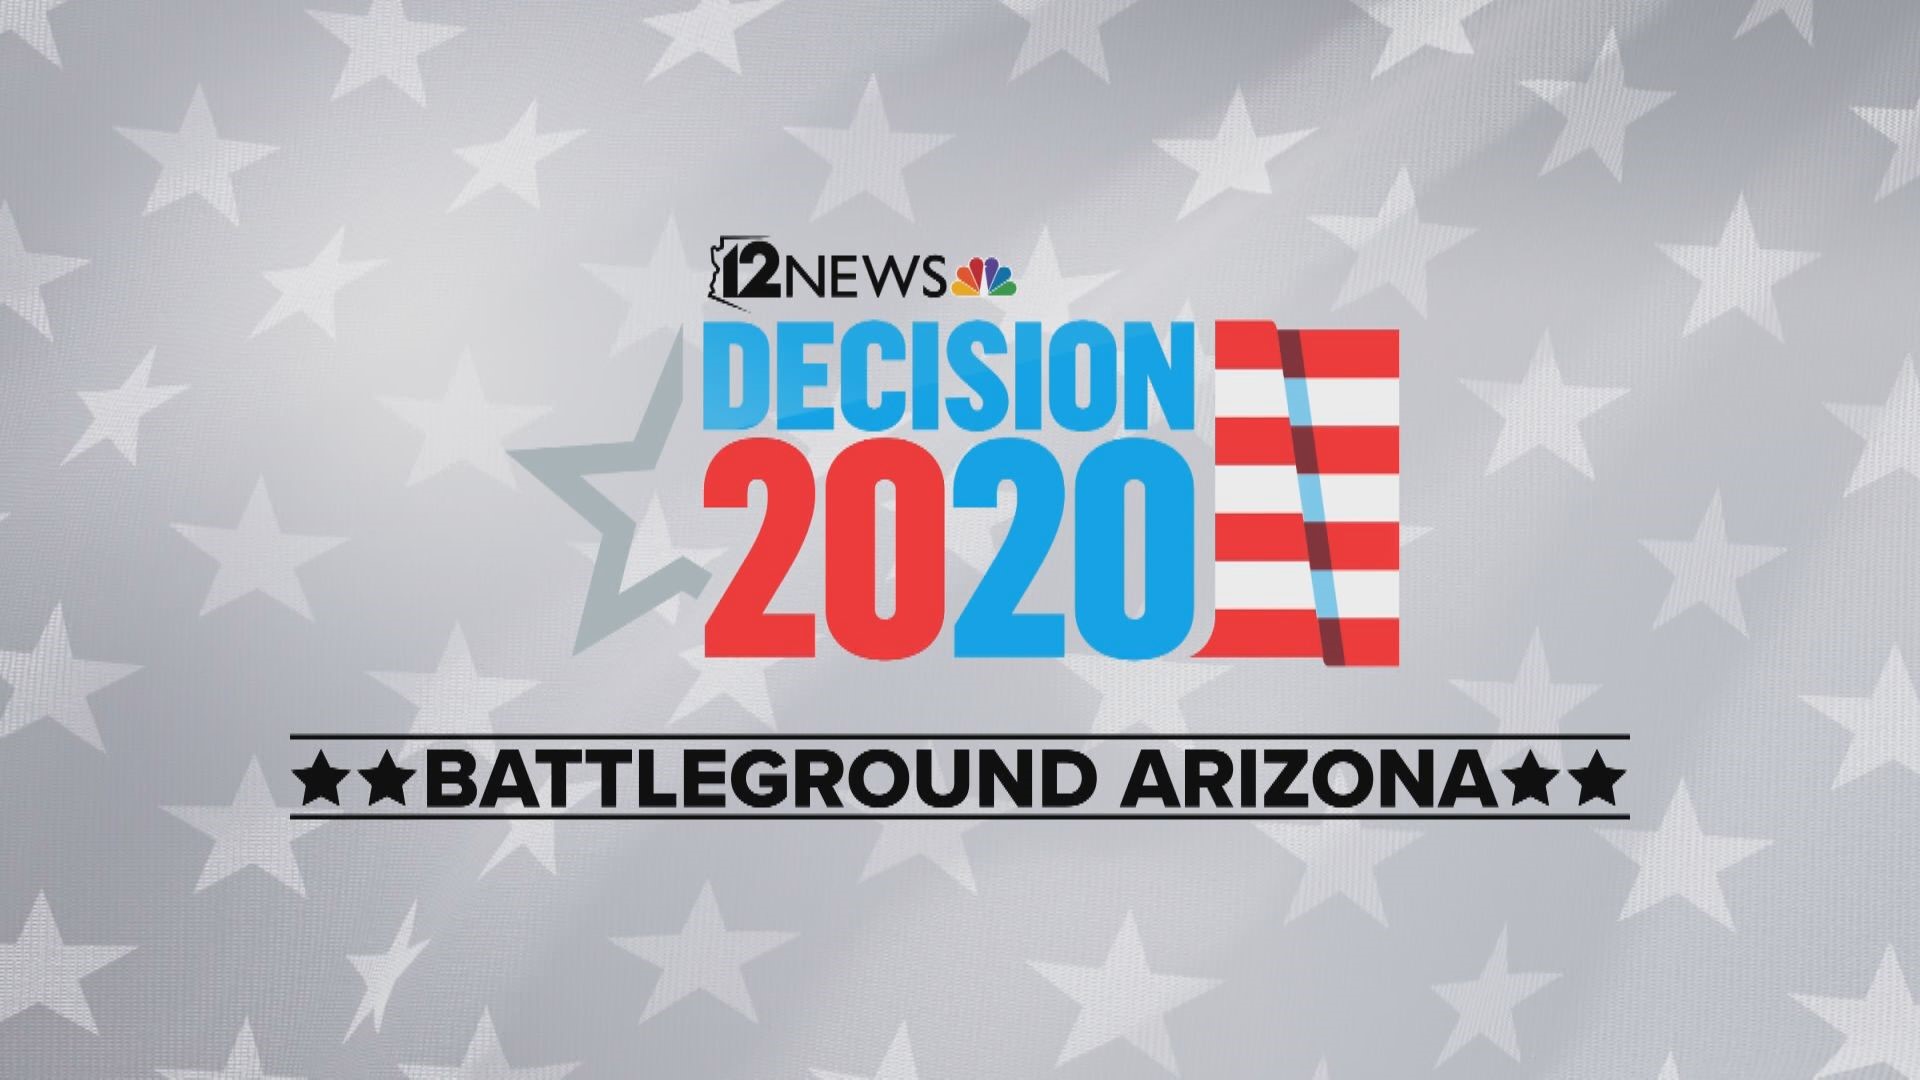 Con las elecciones presidenciales a menos de 6 meses, tanto los republicanos como demócratas luchan por el voto latino en Arizona.